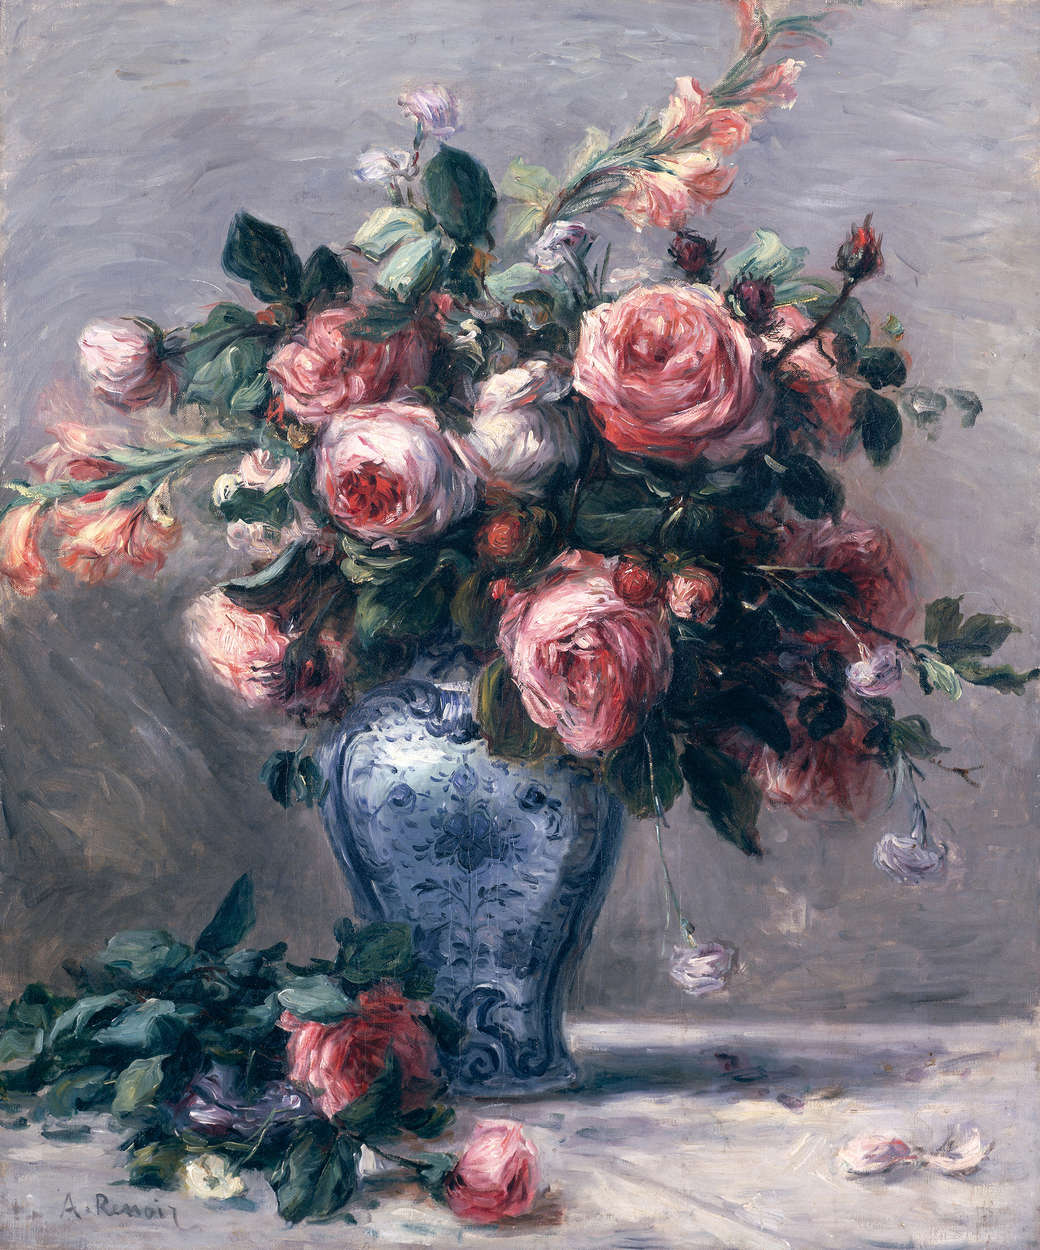             Fototapete "Rose in einer Vase" von Pierre Auguste Renoir
        